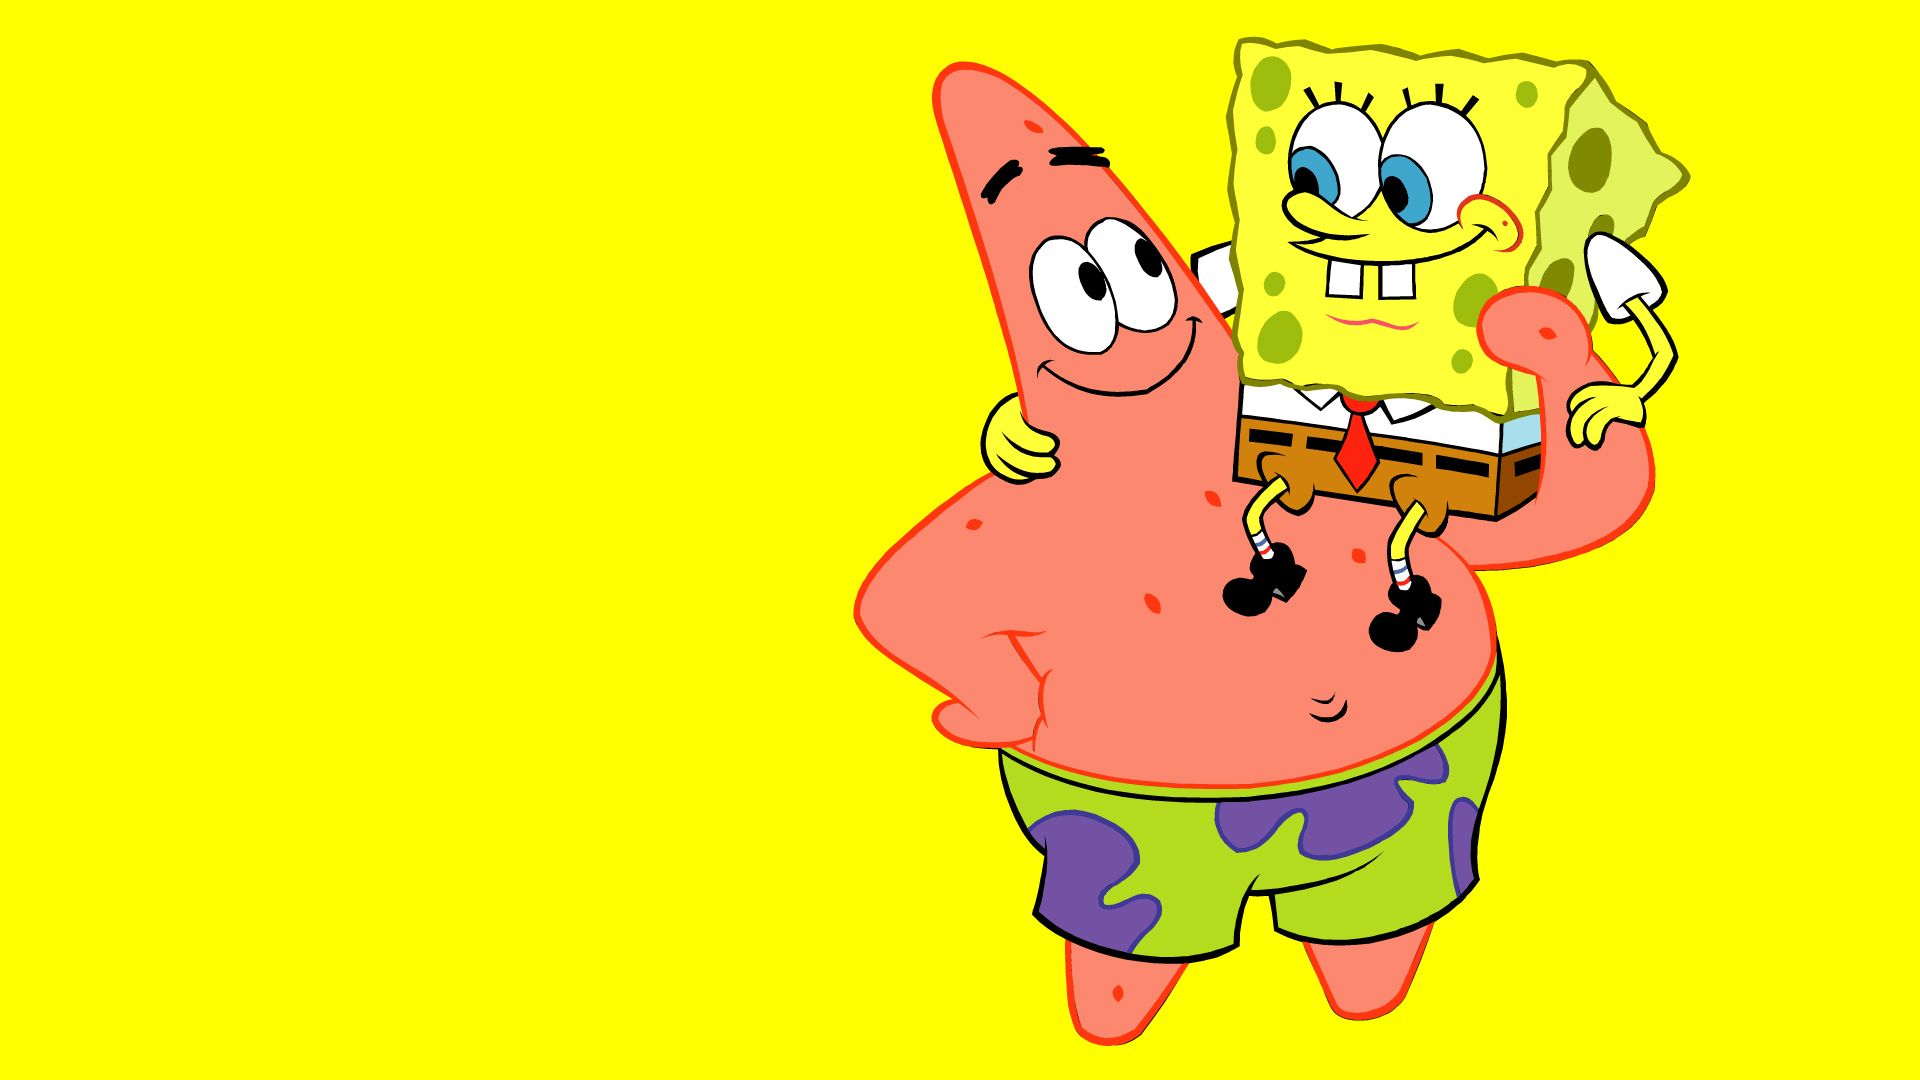 Spongebob and Patrick wallpaper Squarepants Wallpaper